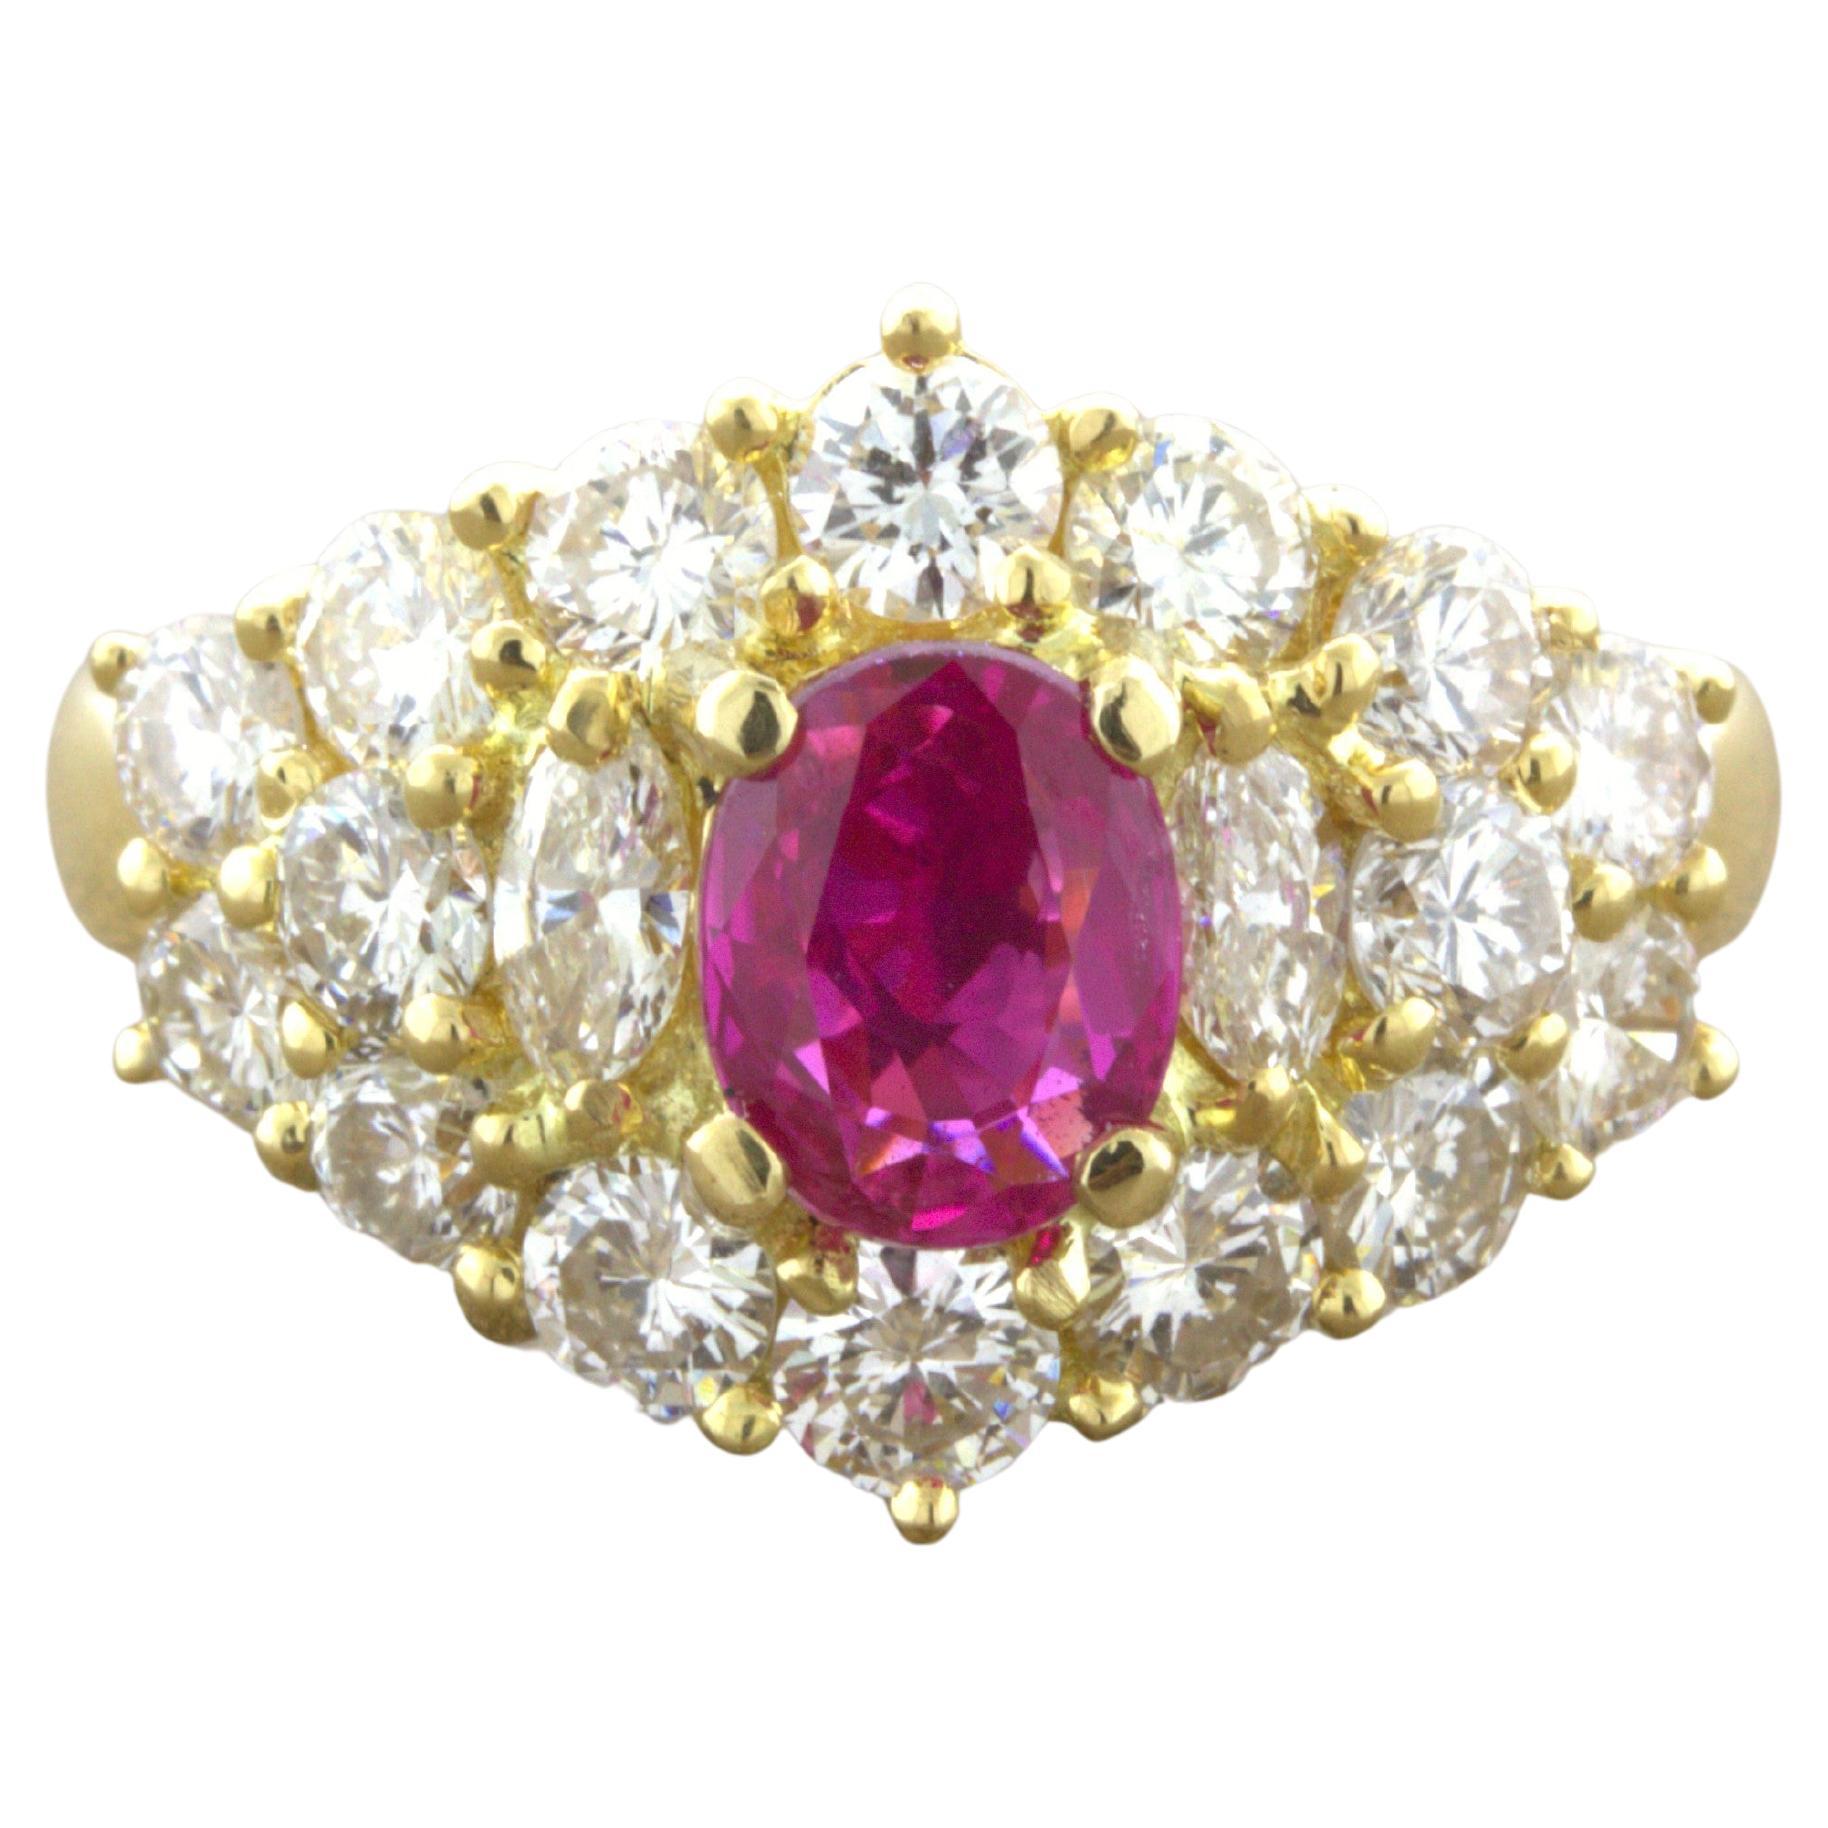 1.09 Carat Burma No-Heat Ruby Diamond 18K Yellow Gold Ring, GIA Certified For Sale